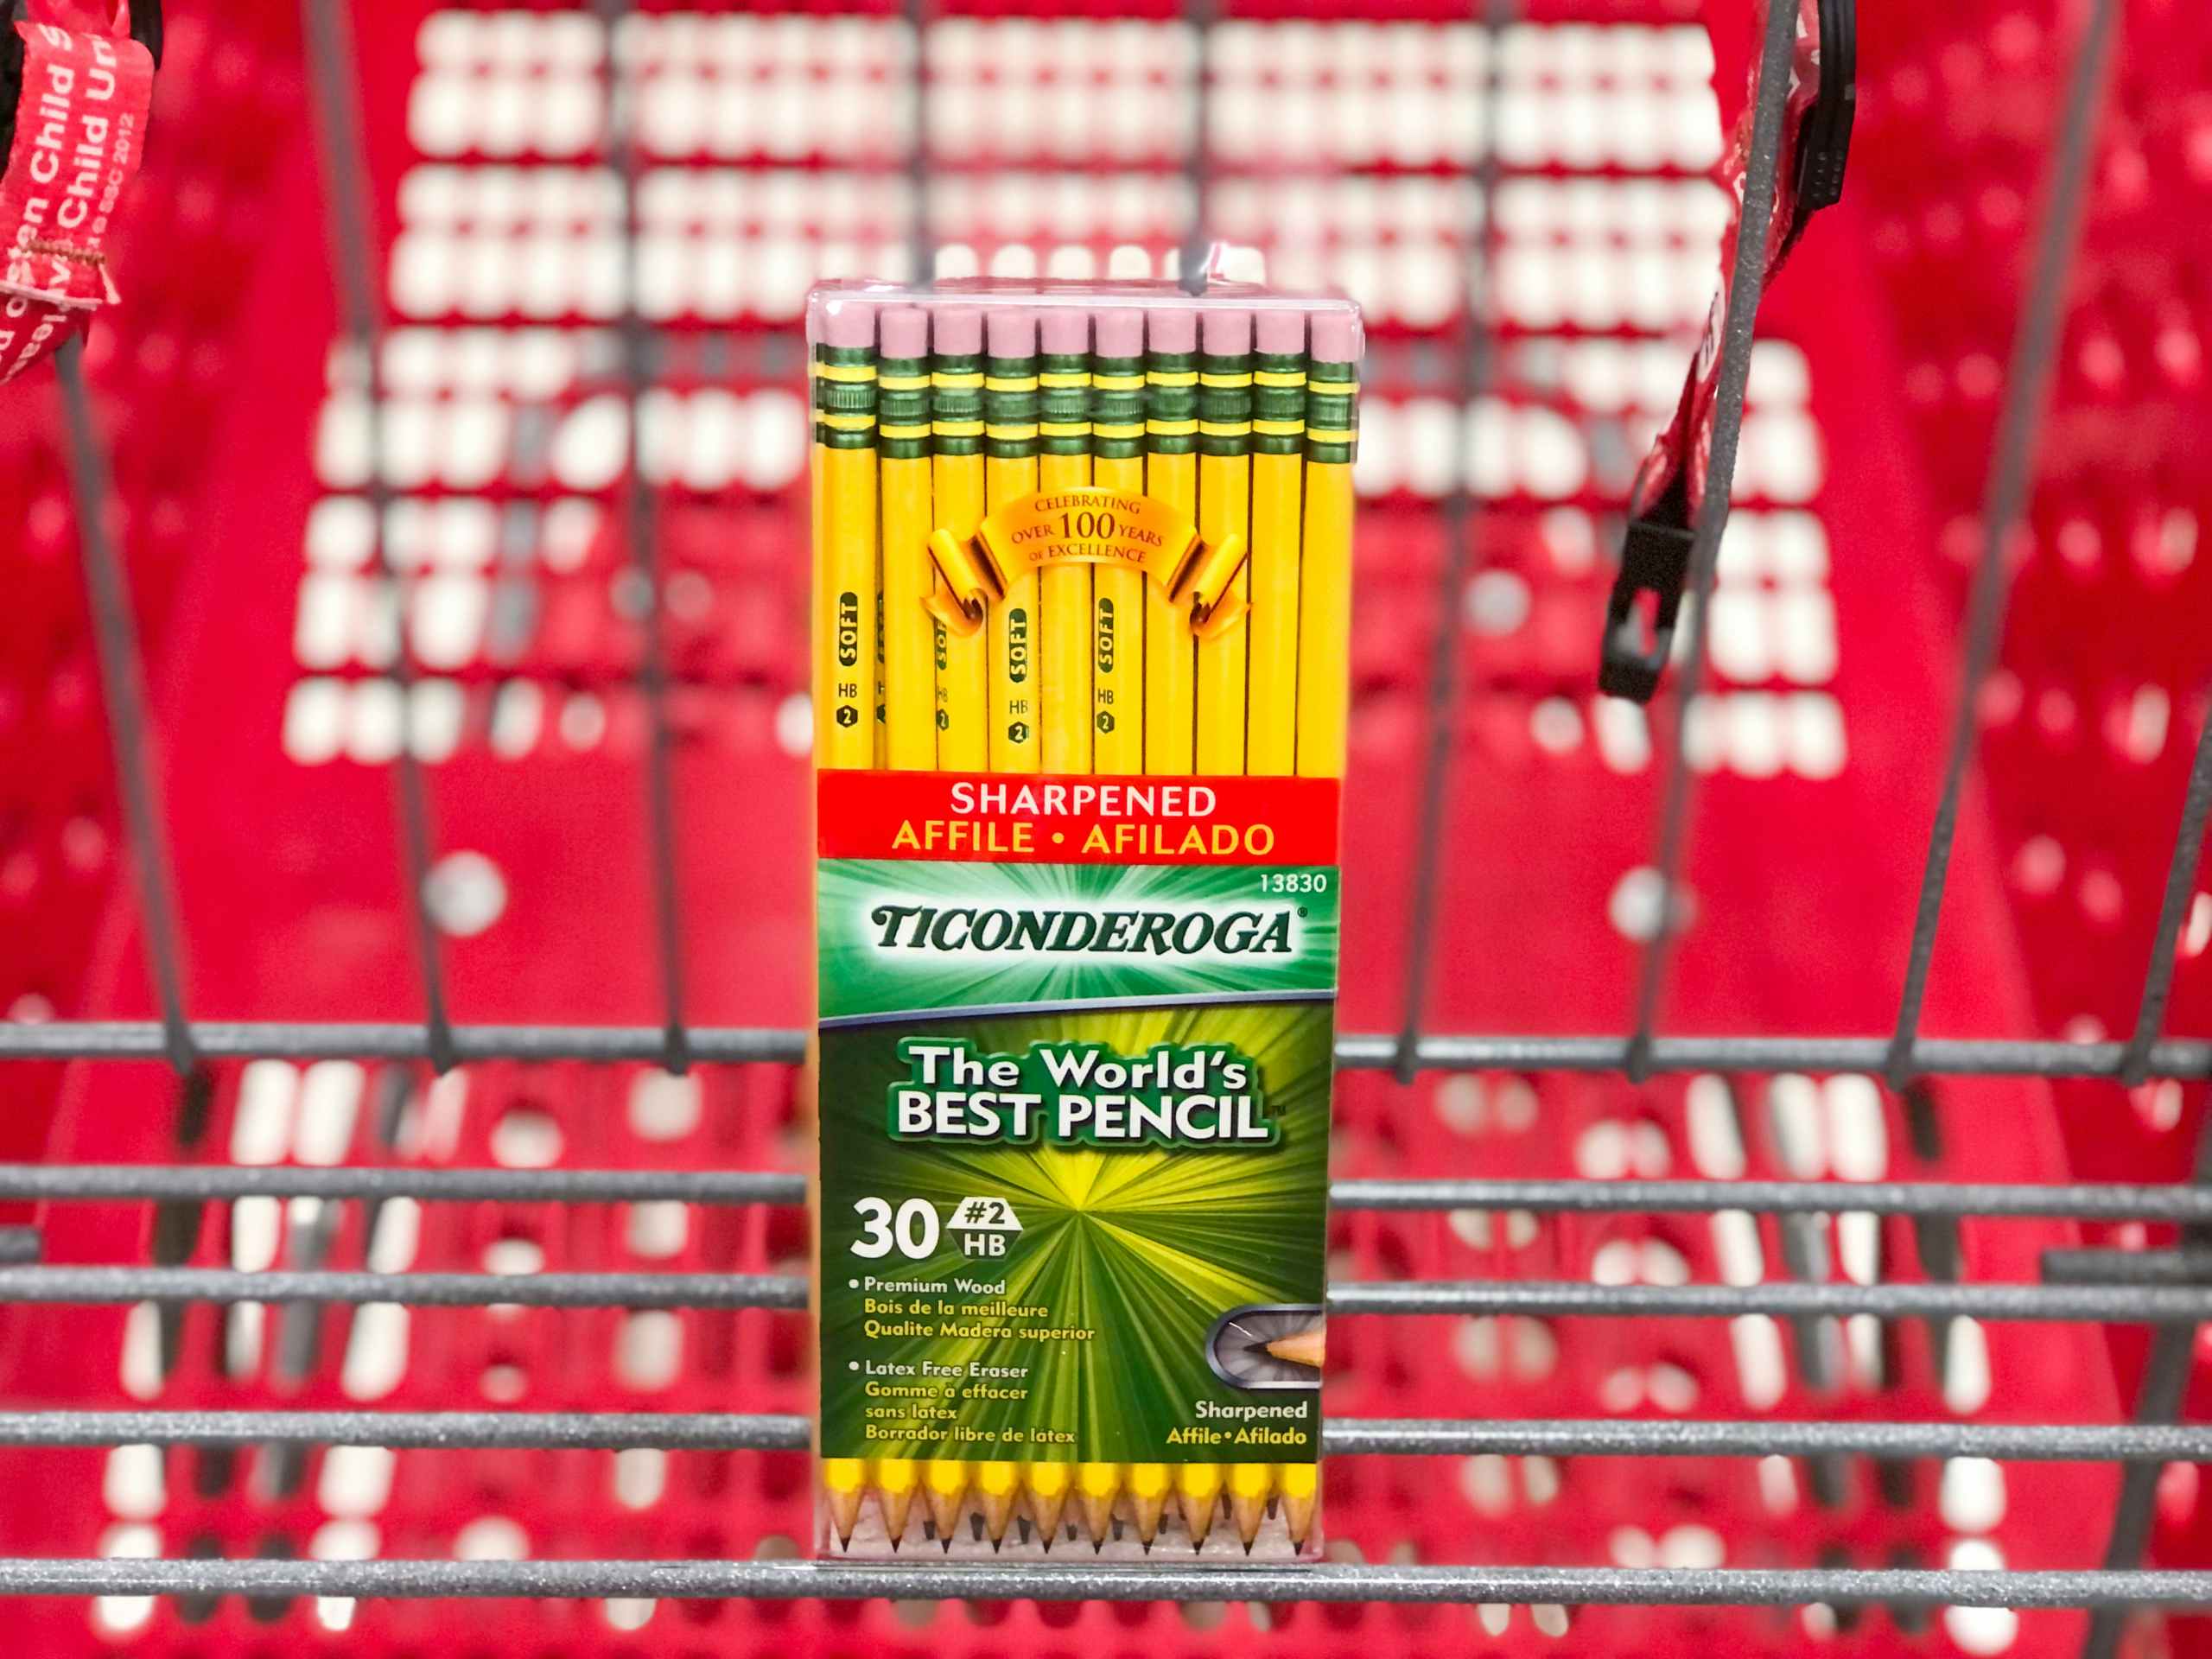 Ticonderoga pencils in Target